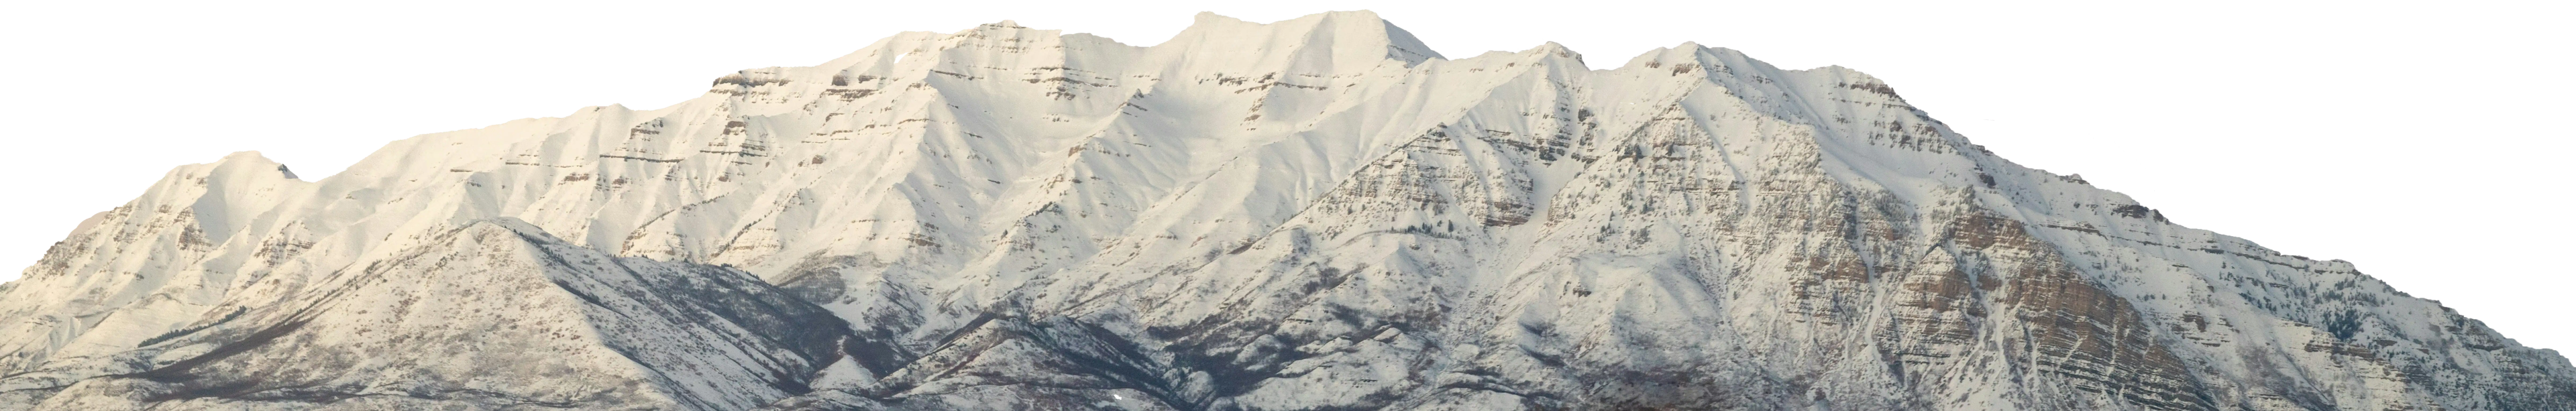 Timpanogos Mountain in Utah